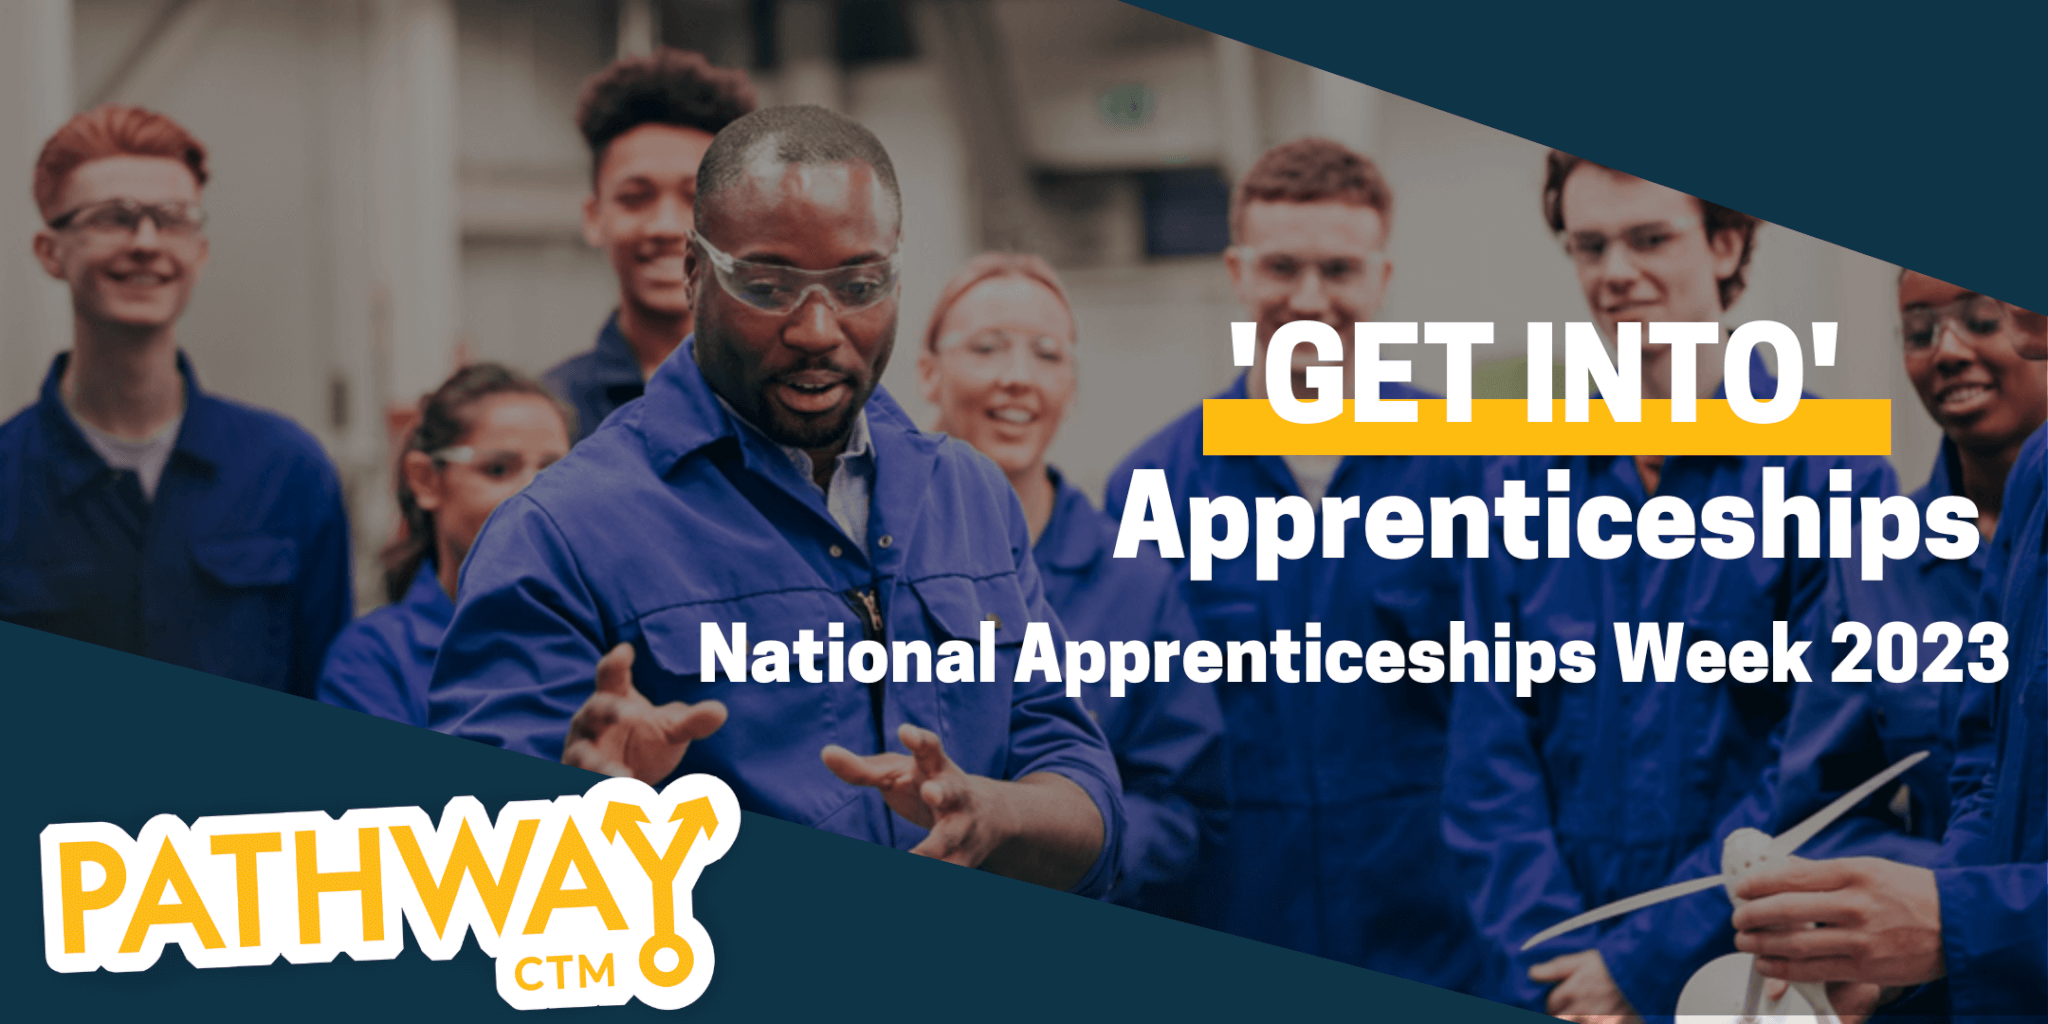 'Get Into' Apprenticeships National Apprenticeships Week Pathway CTM